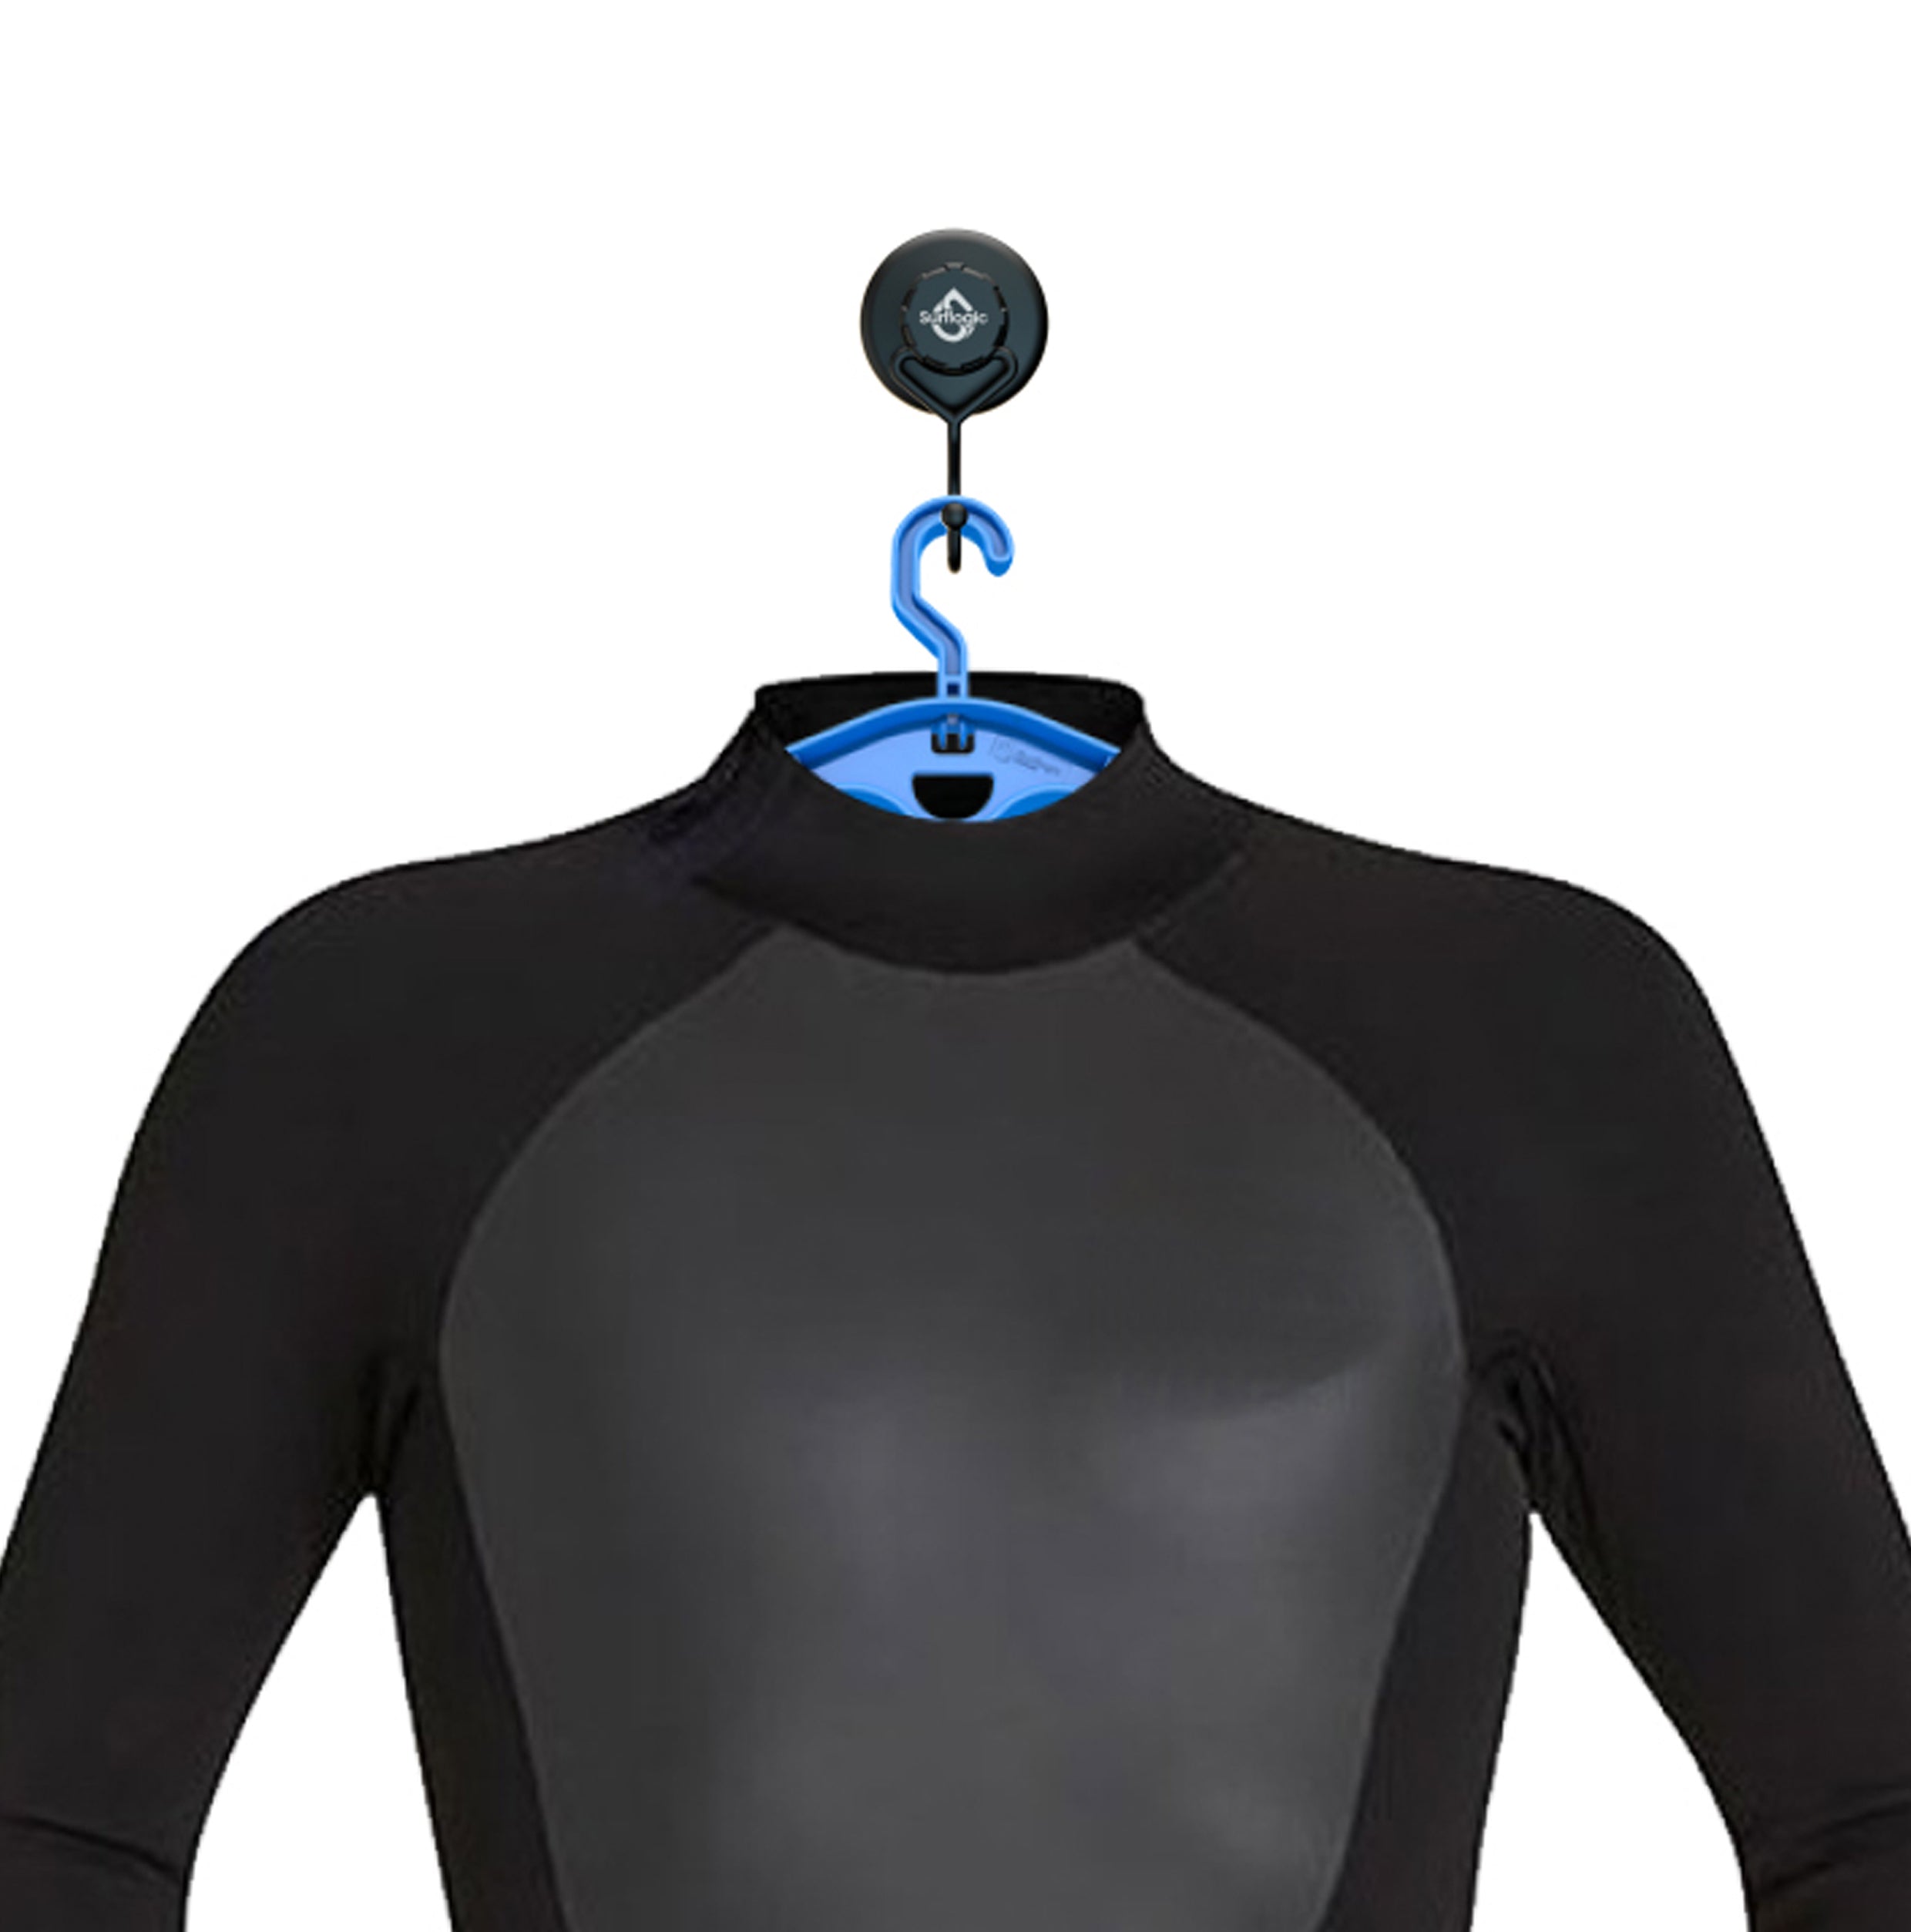 Surflogic Suction Wetsuit Hook